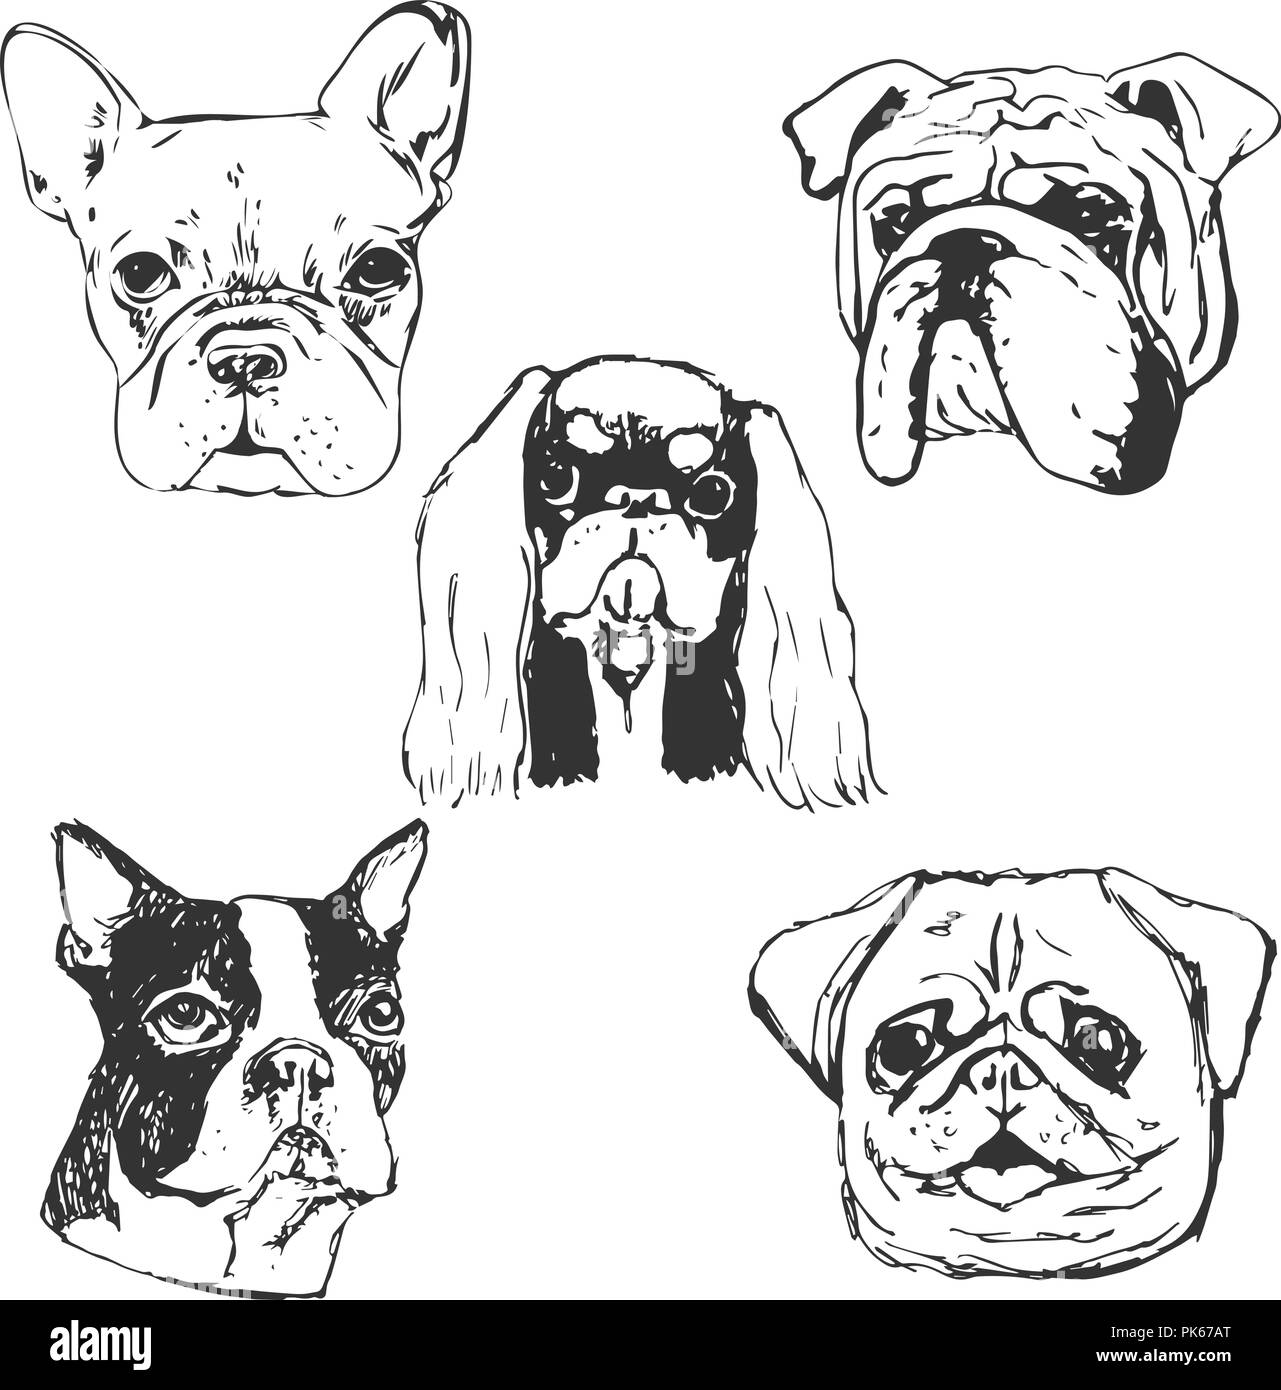 Cane illustrazione vettoriale. Disegnato a mano ritratti cane.schizzo di  riproduttori di razza cani di piccola taglia. T-shirt idea di stampa per  gli amanti del cane. Elementi per cane club logo design Immagine